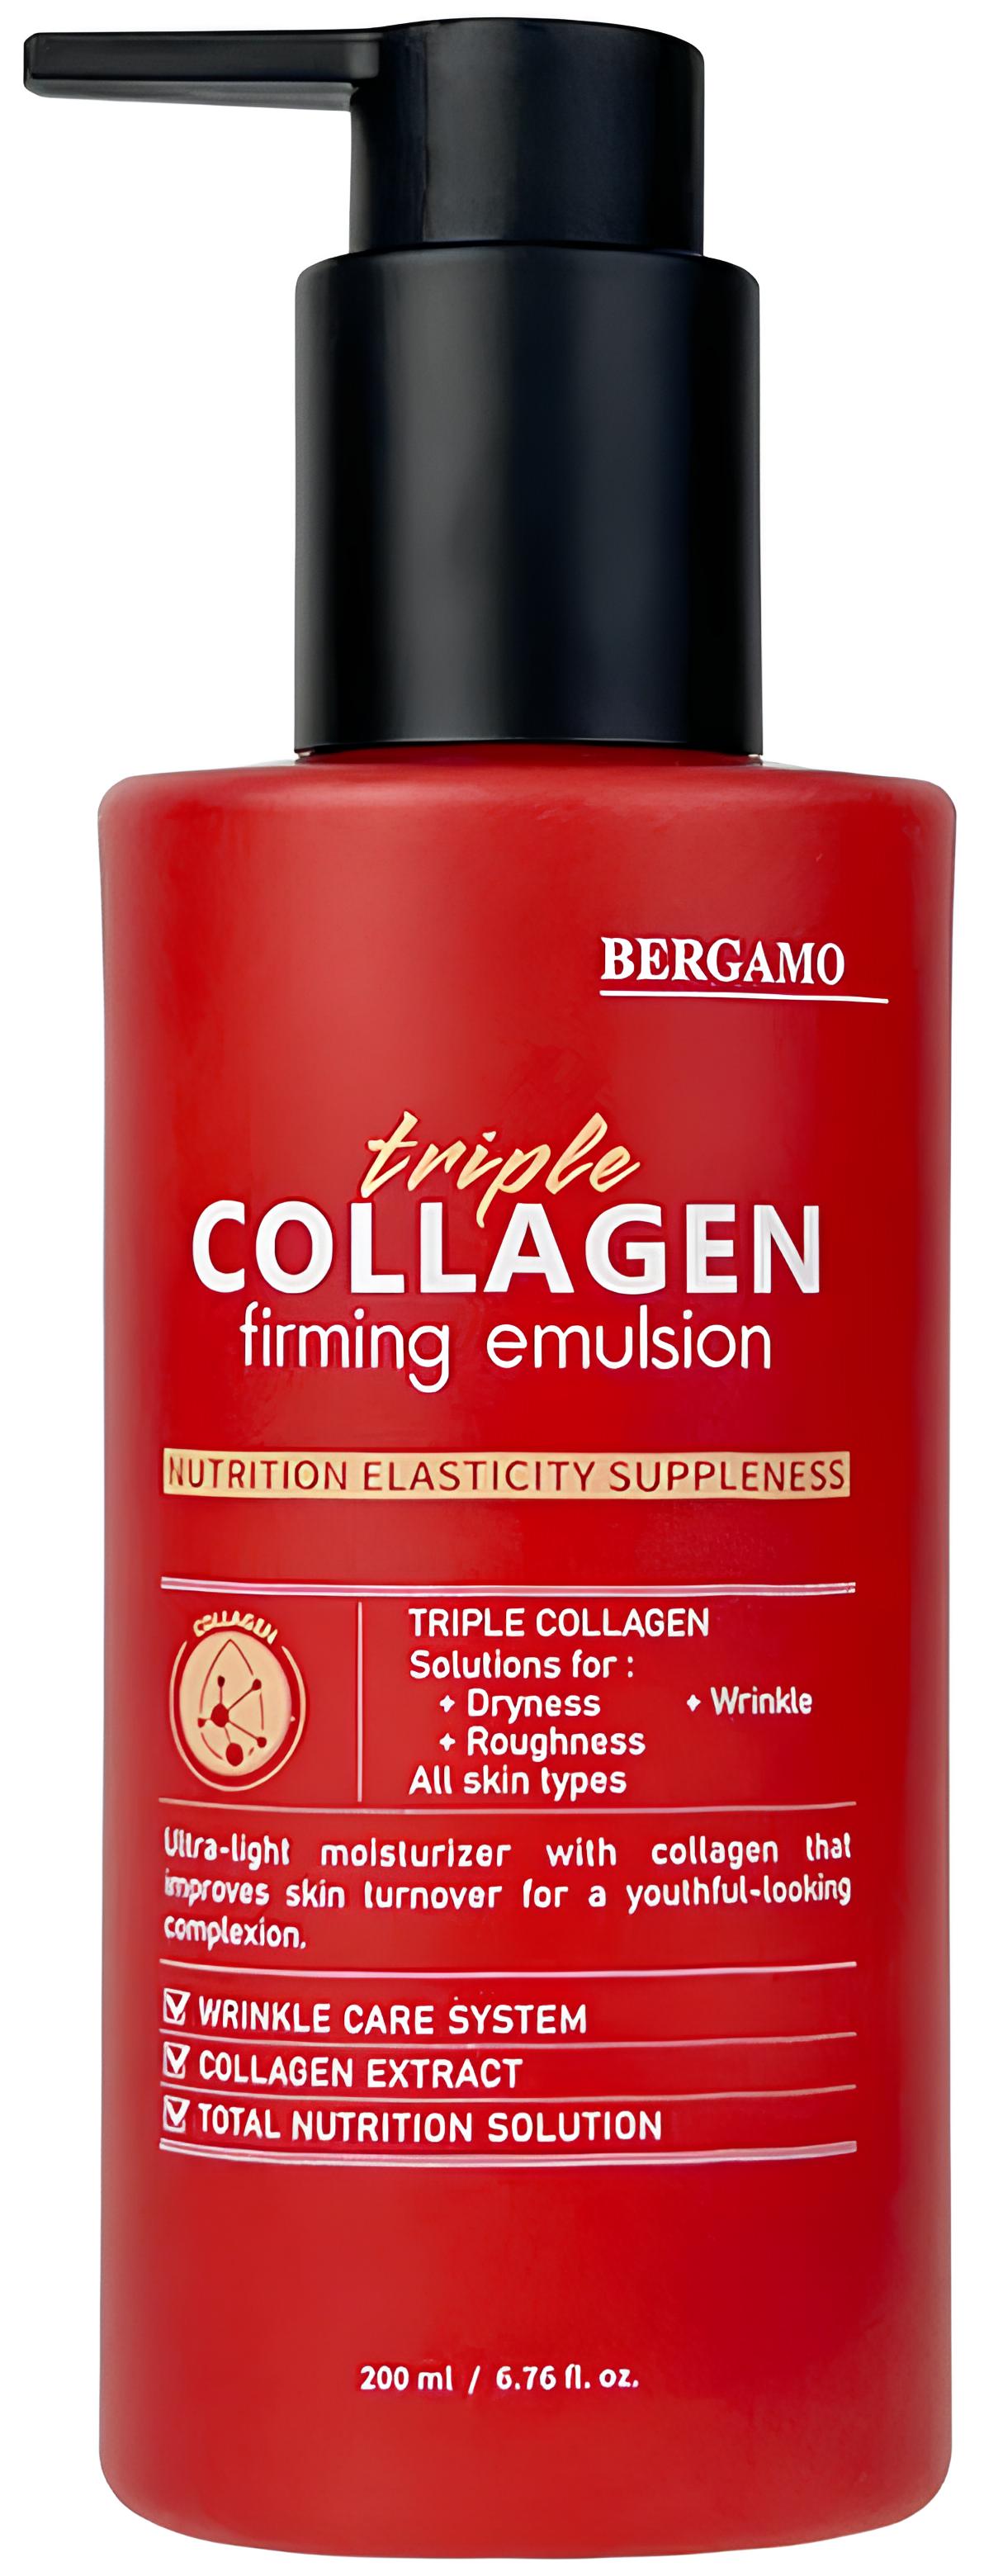 Укрепляющая эмульсия с тройным коллагеном Bergamo Triple Collagen Firming Emulsion 200 мл укрепляющая эмульсия с антикуперозным комплексом